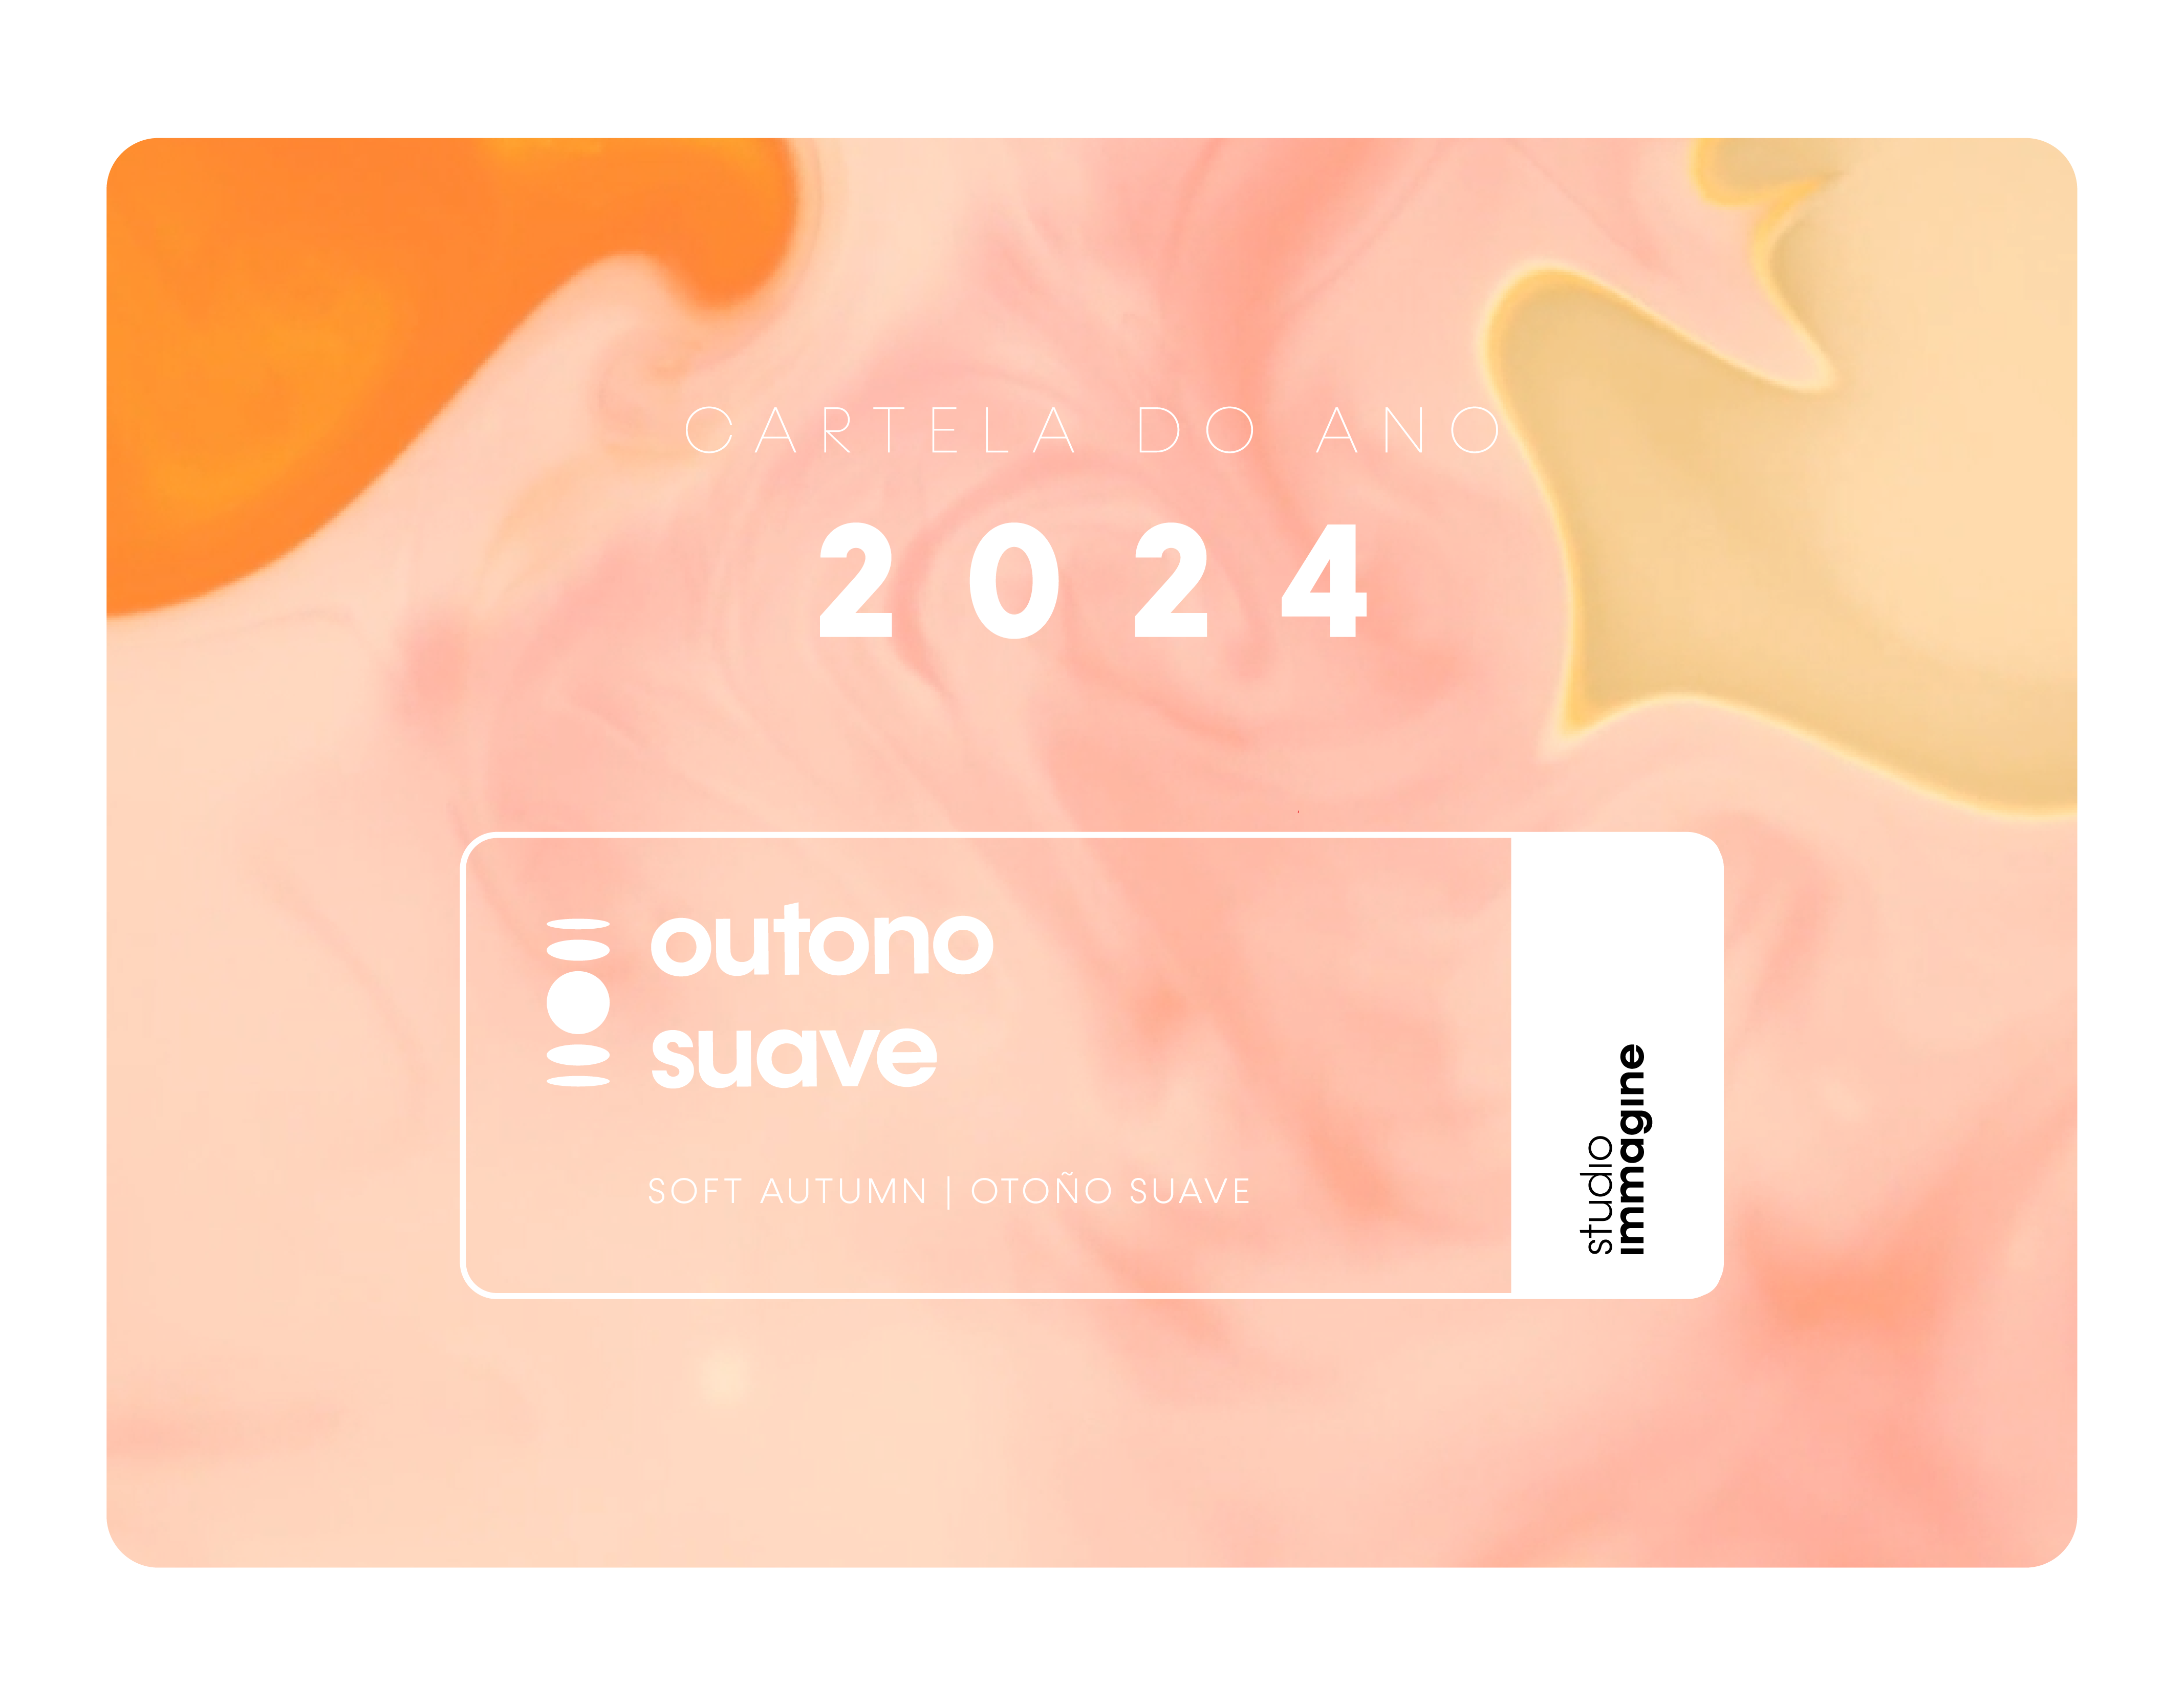 outono suave cartela do ano de 2024